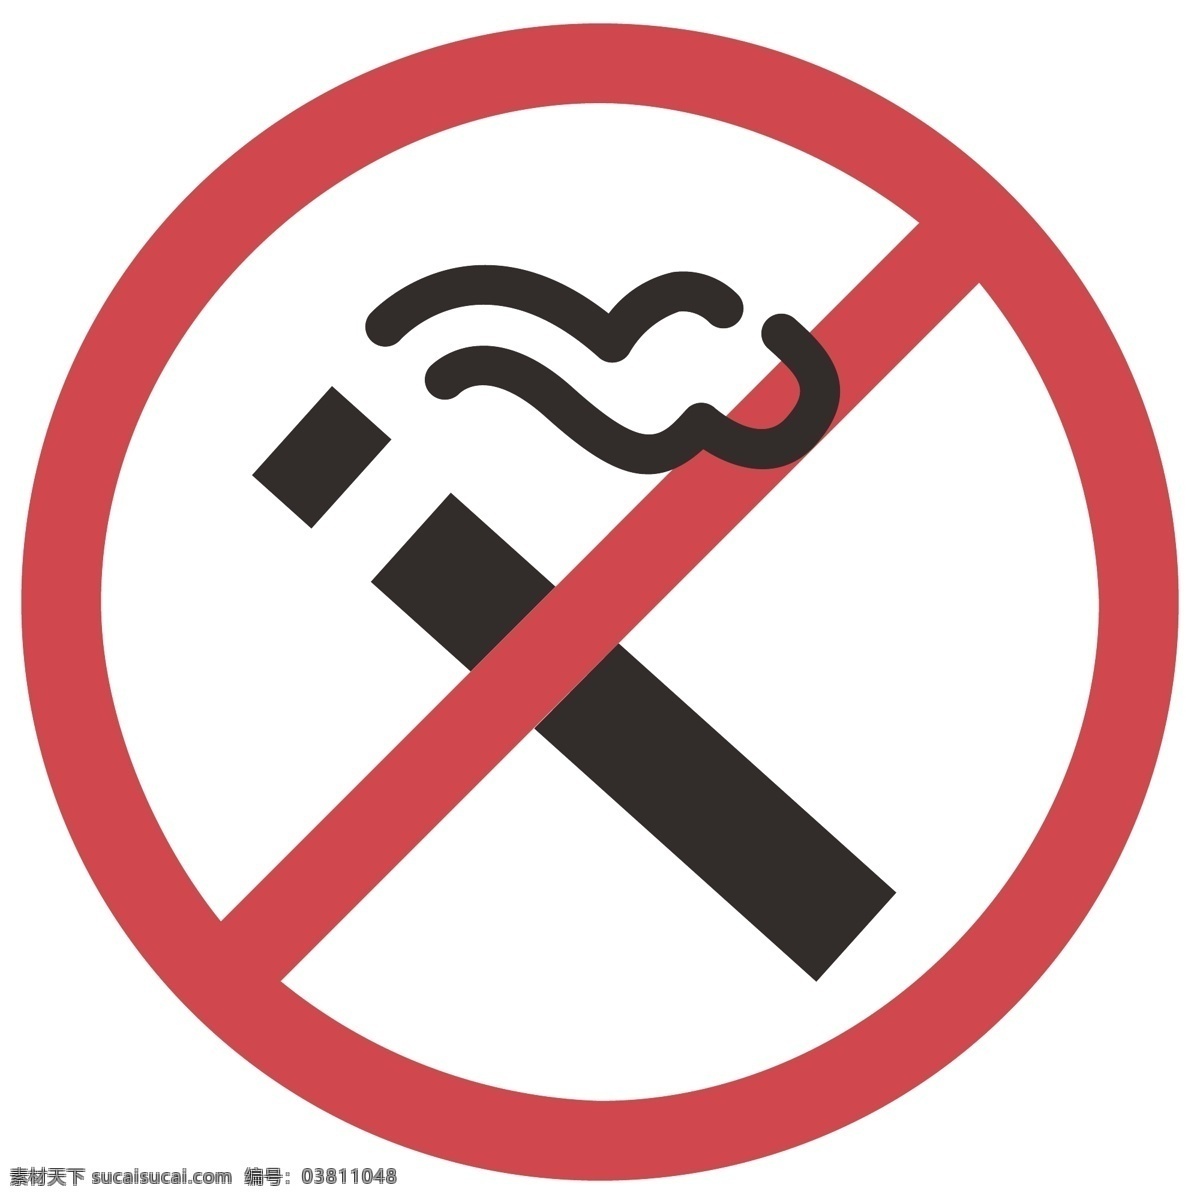 吸烟 有害 健康 插画 禁止吸烟 不许吸烟 吸烟图标插画 禁烟图标 插图 禁止吸烟插图 吸烟有害健康